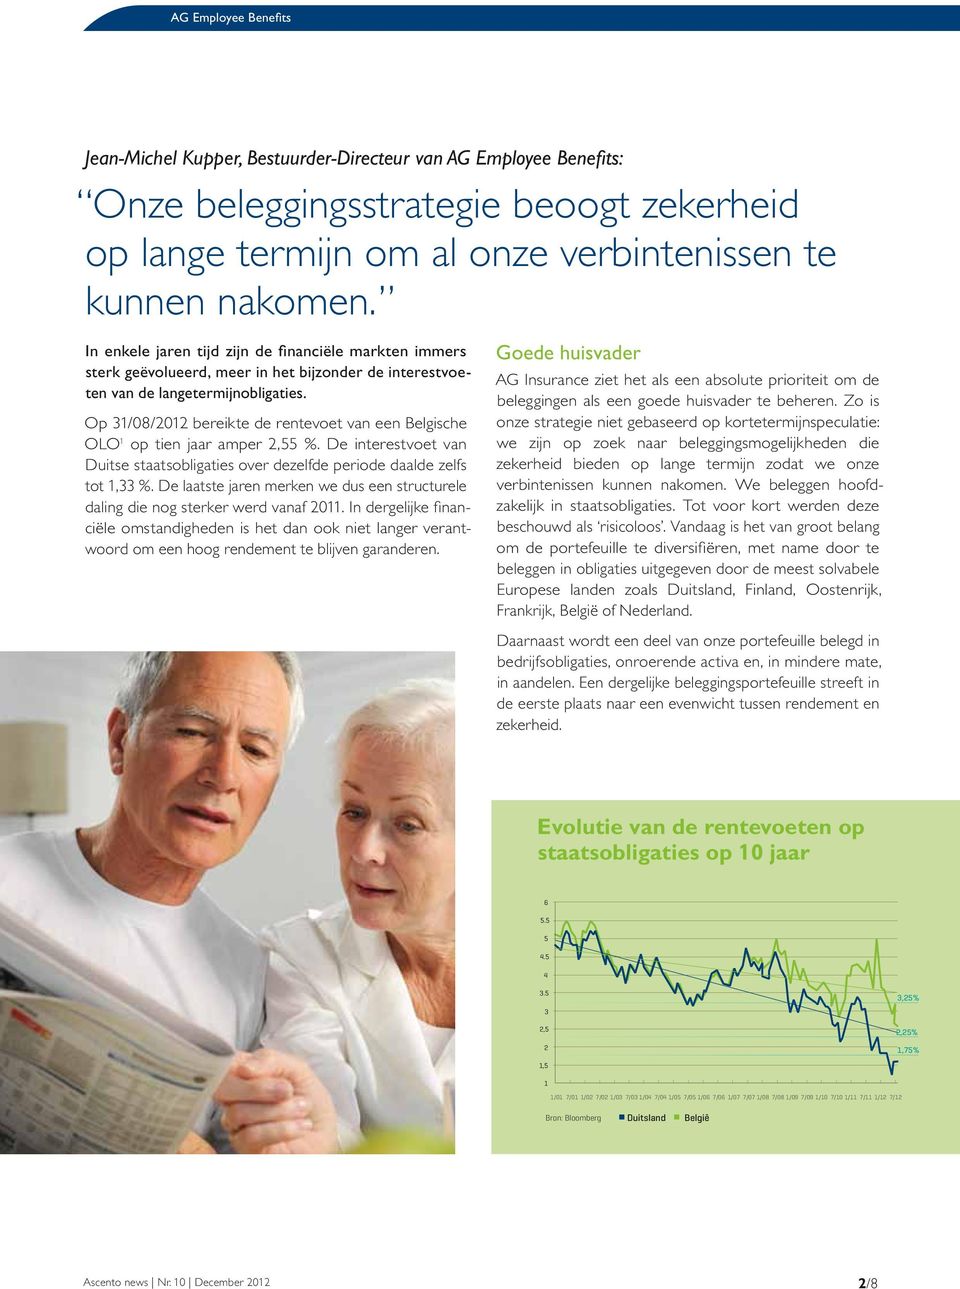 Op 31/08/2012 bereikte de rentevoet van een Belgische OLO 1 op tien jaar amper 2,55 %. De interestvoet van Duitse staatsobligaties over dezelfde periode daalde zelfs tot 1,33 %.